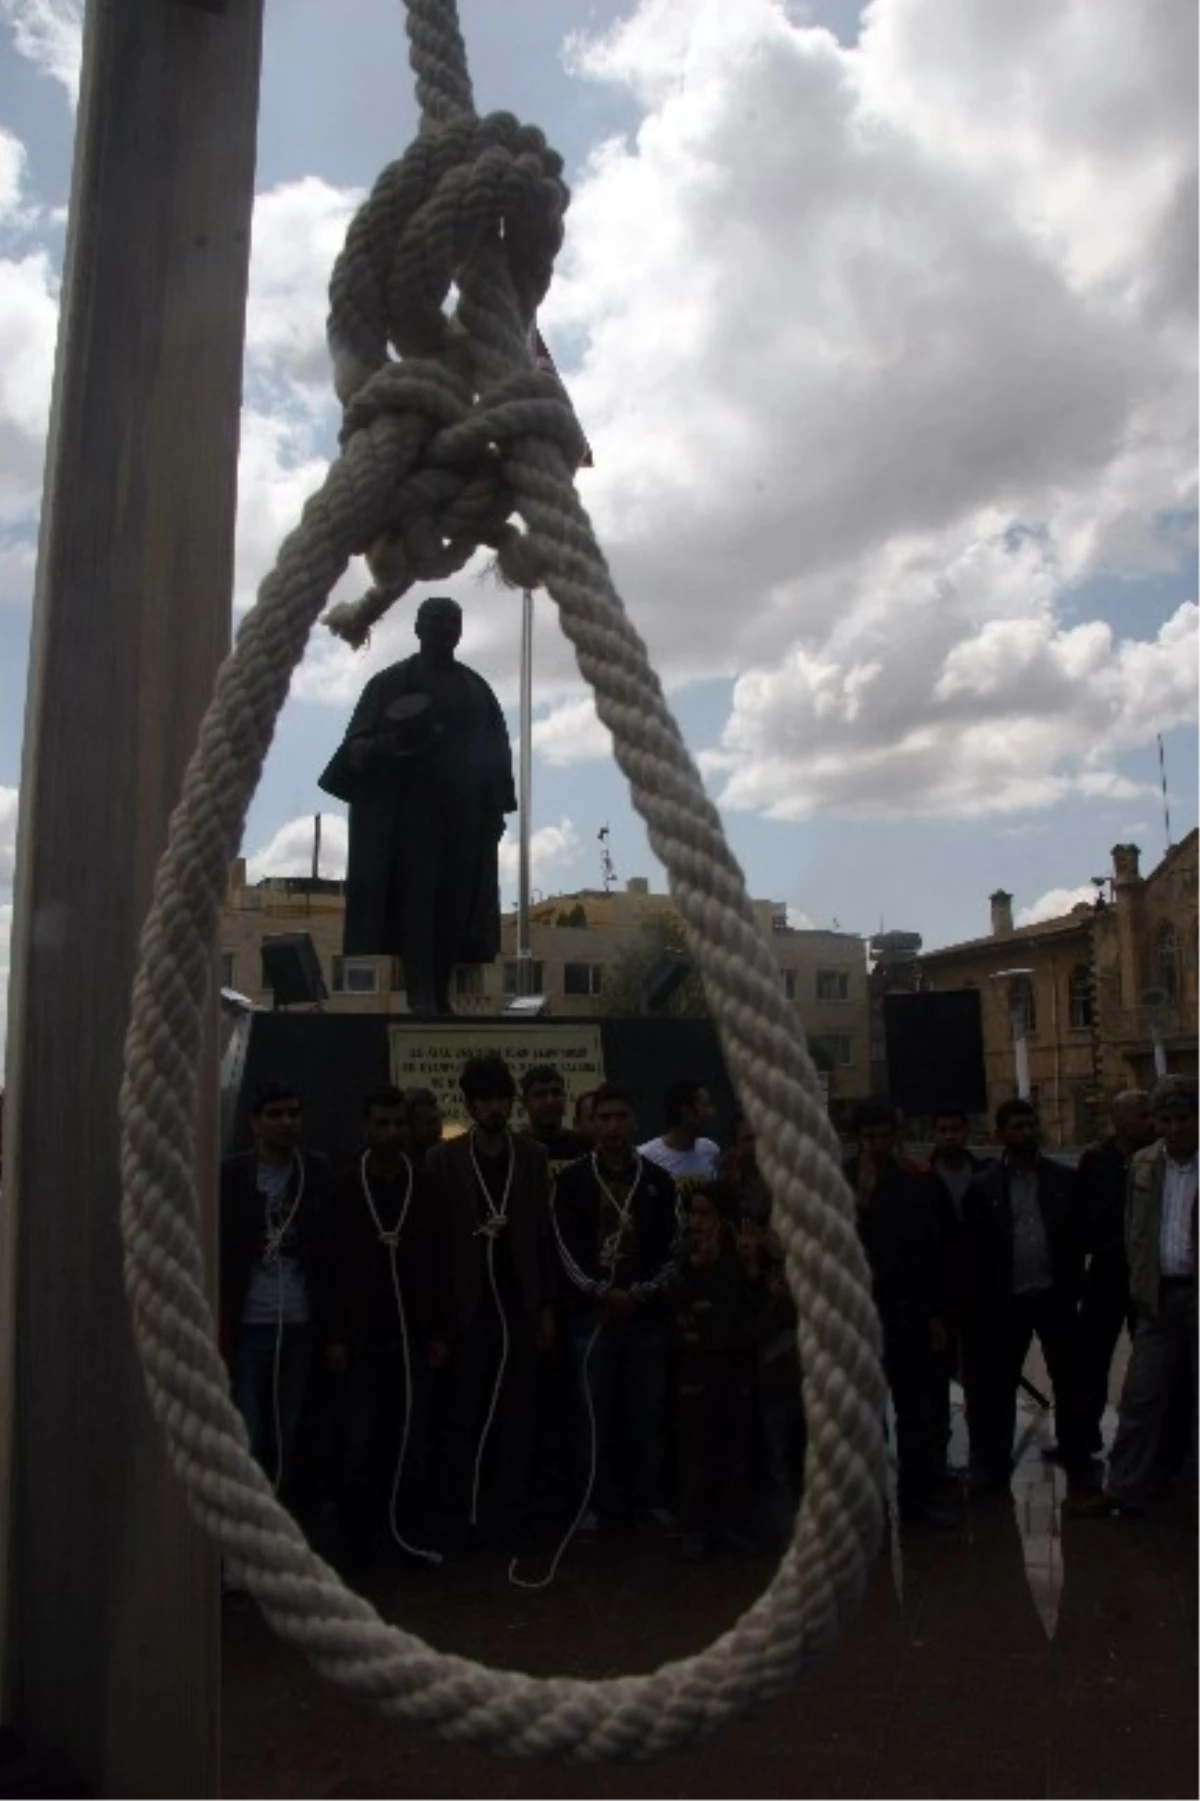 Ak Partili Gençler, Mısır\'daki İdam Kararları İçin İmza Kampanyası Başlattı